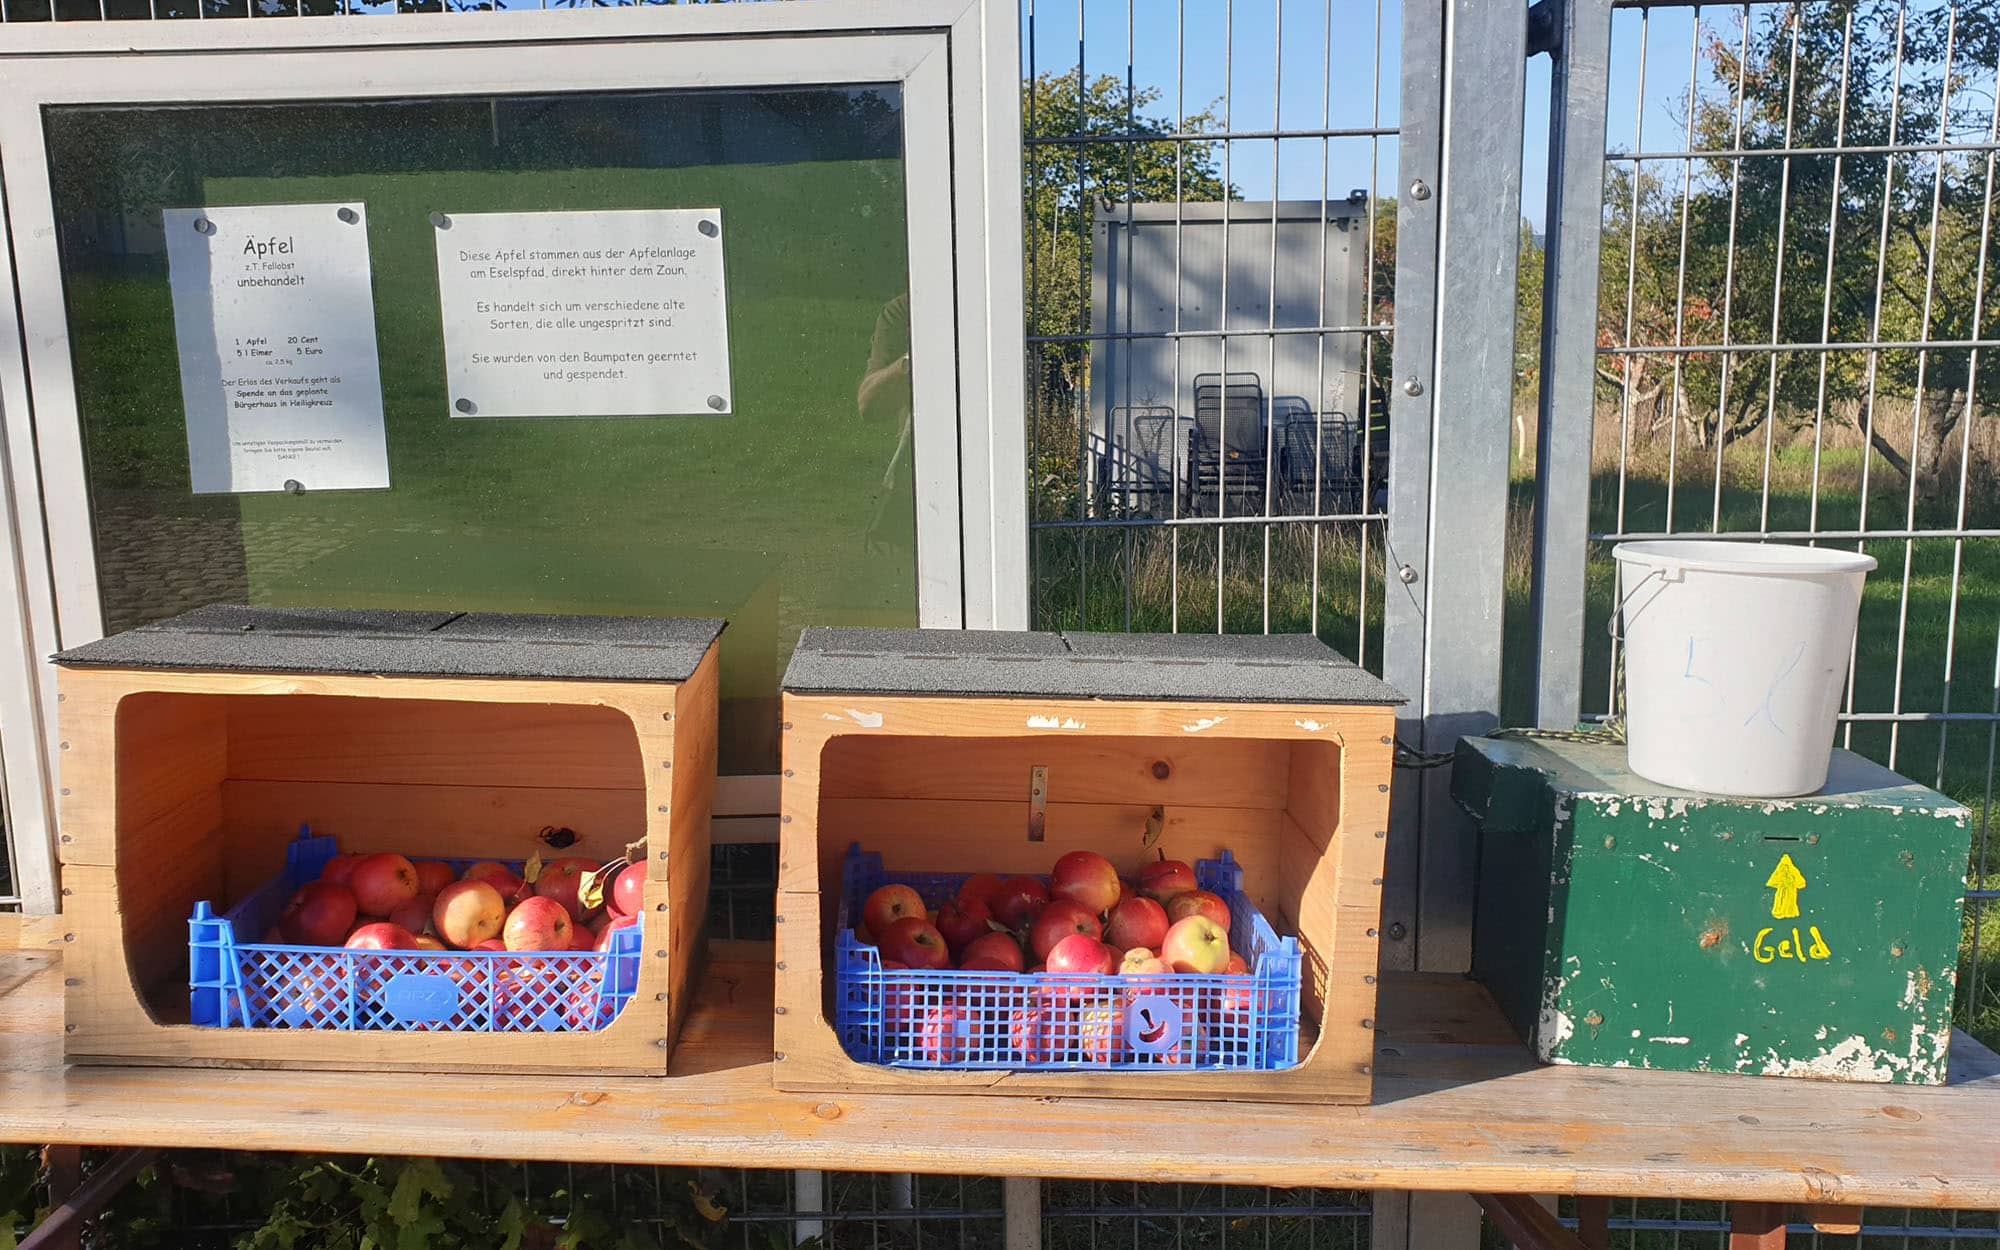 Projekt Apfel gegen Spenden